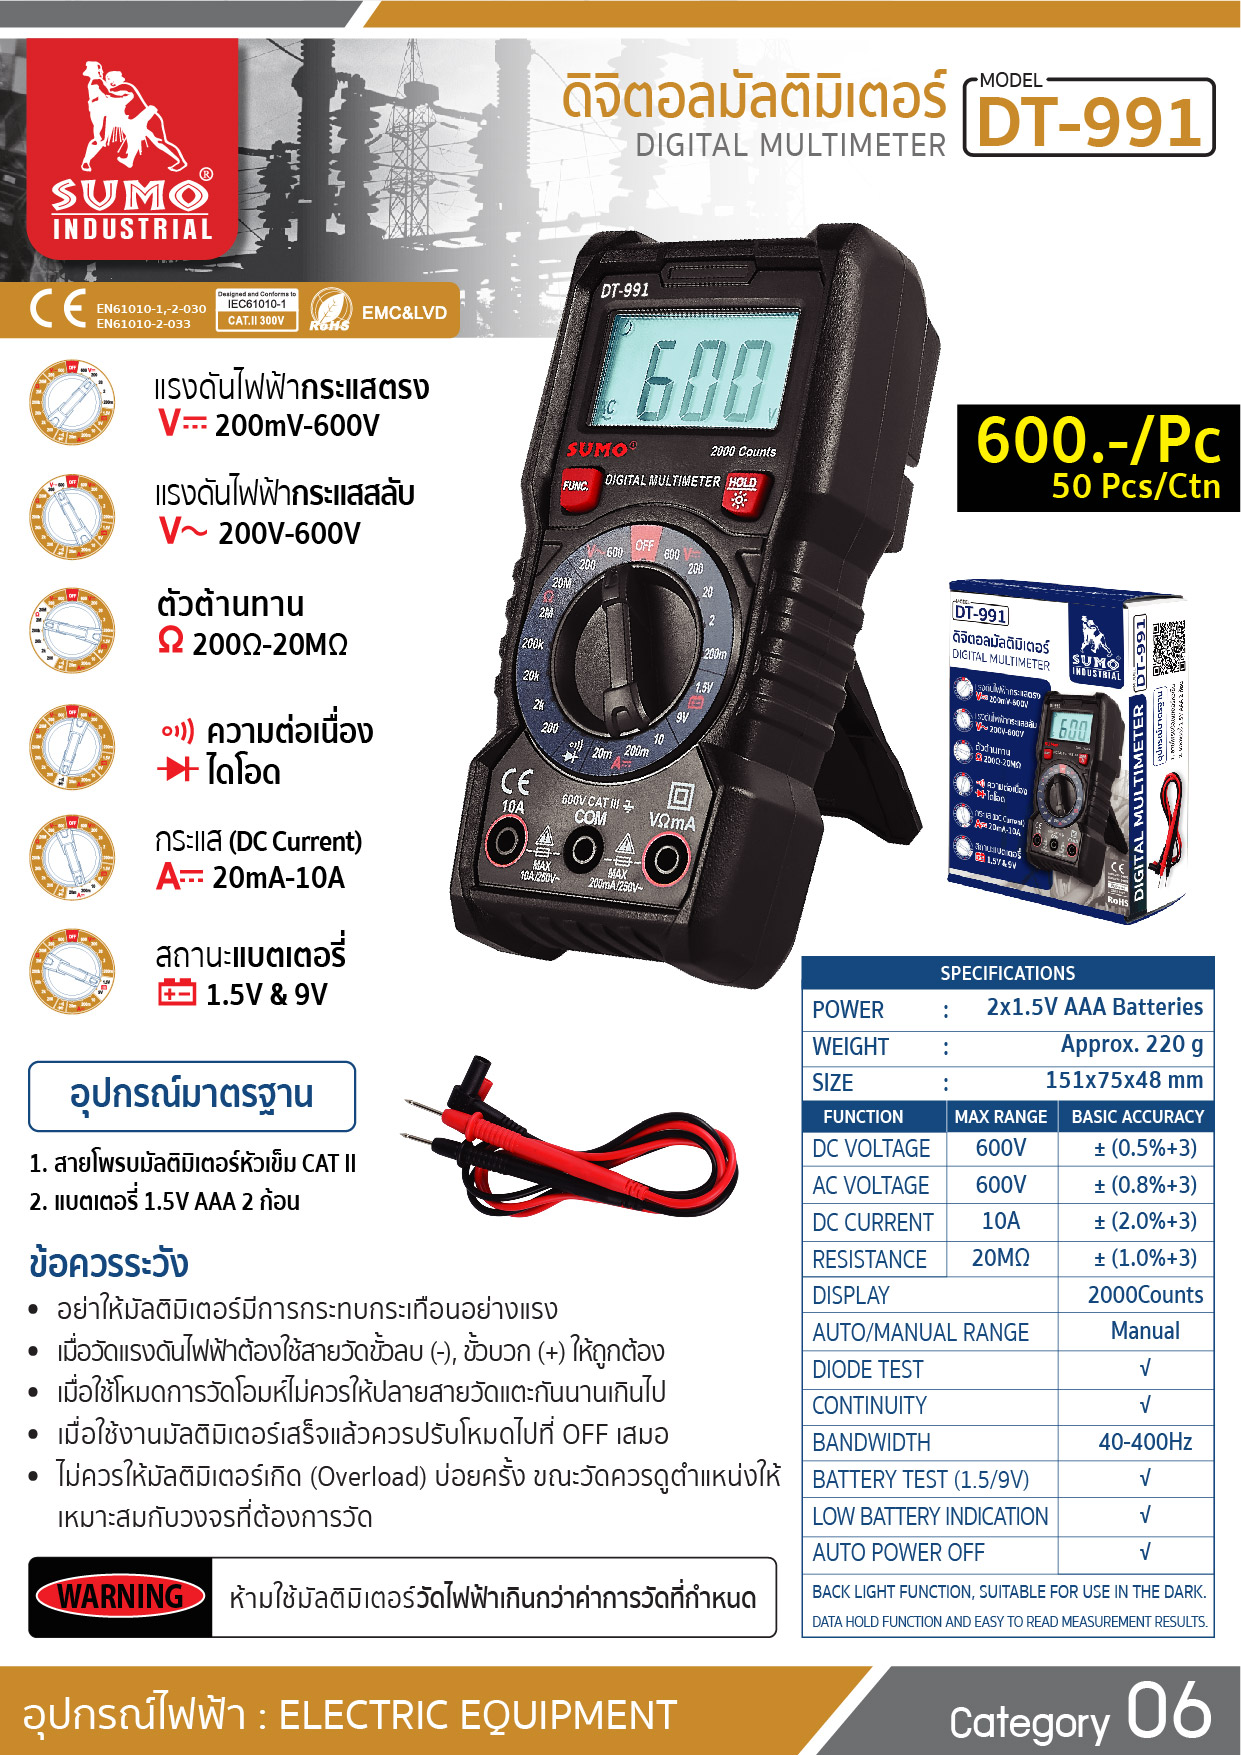 (9/20) ดิจิตอลมัลติมิเตอร์ รุ่น DT-991